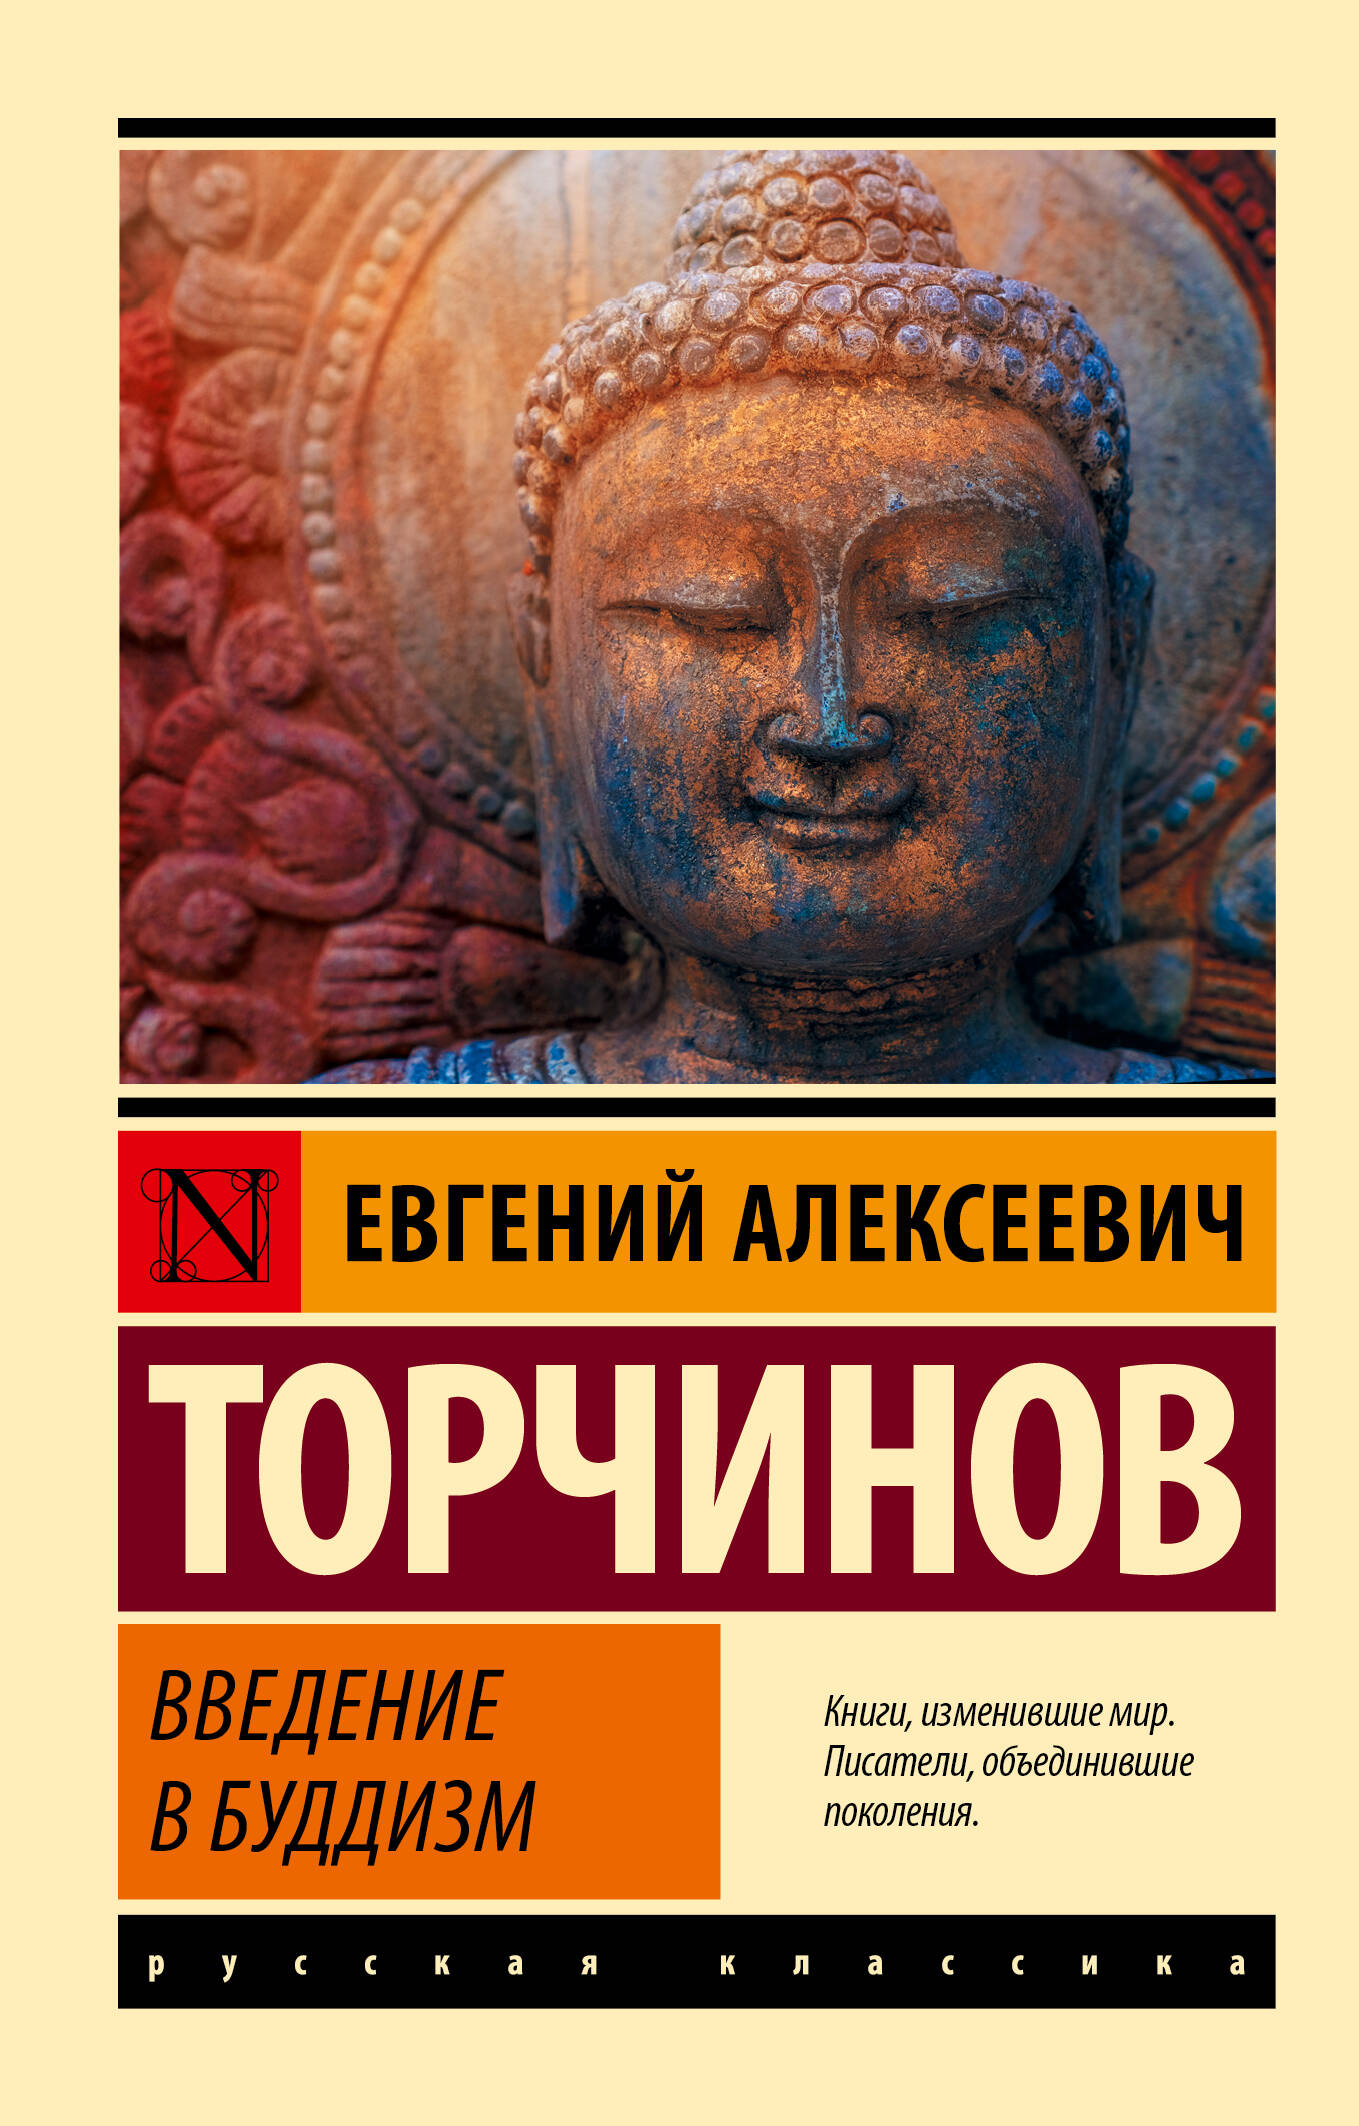 е торчинов введение в буддизм Торчинов Евгений Алексеевич Введение в буддизм